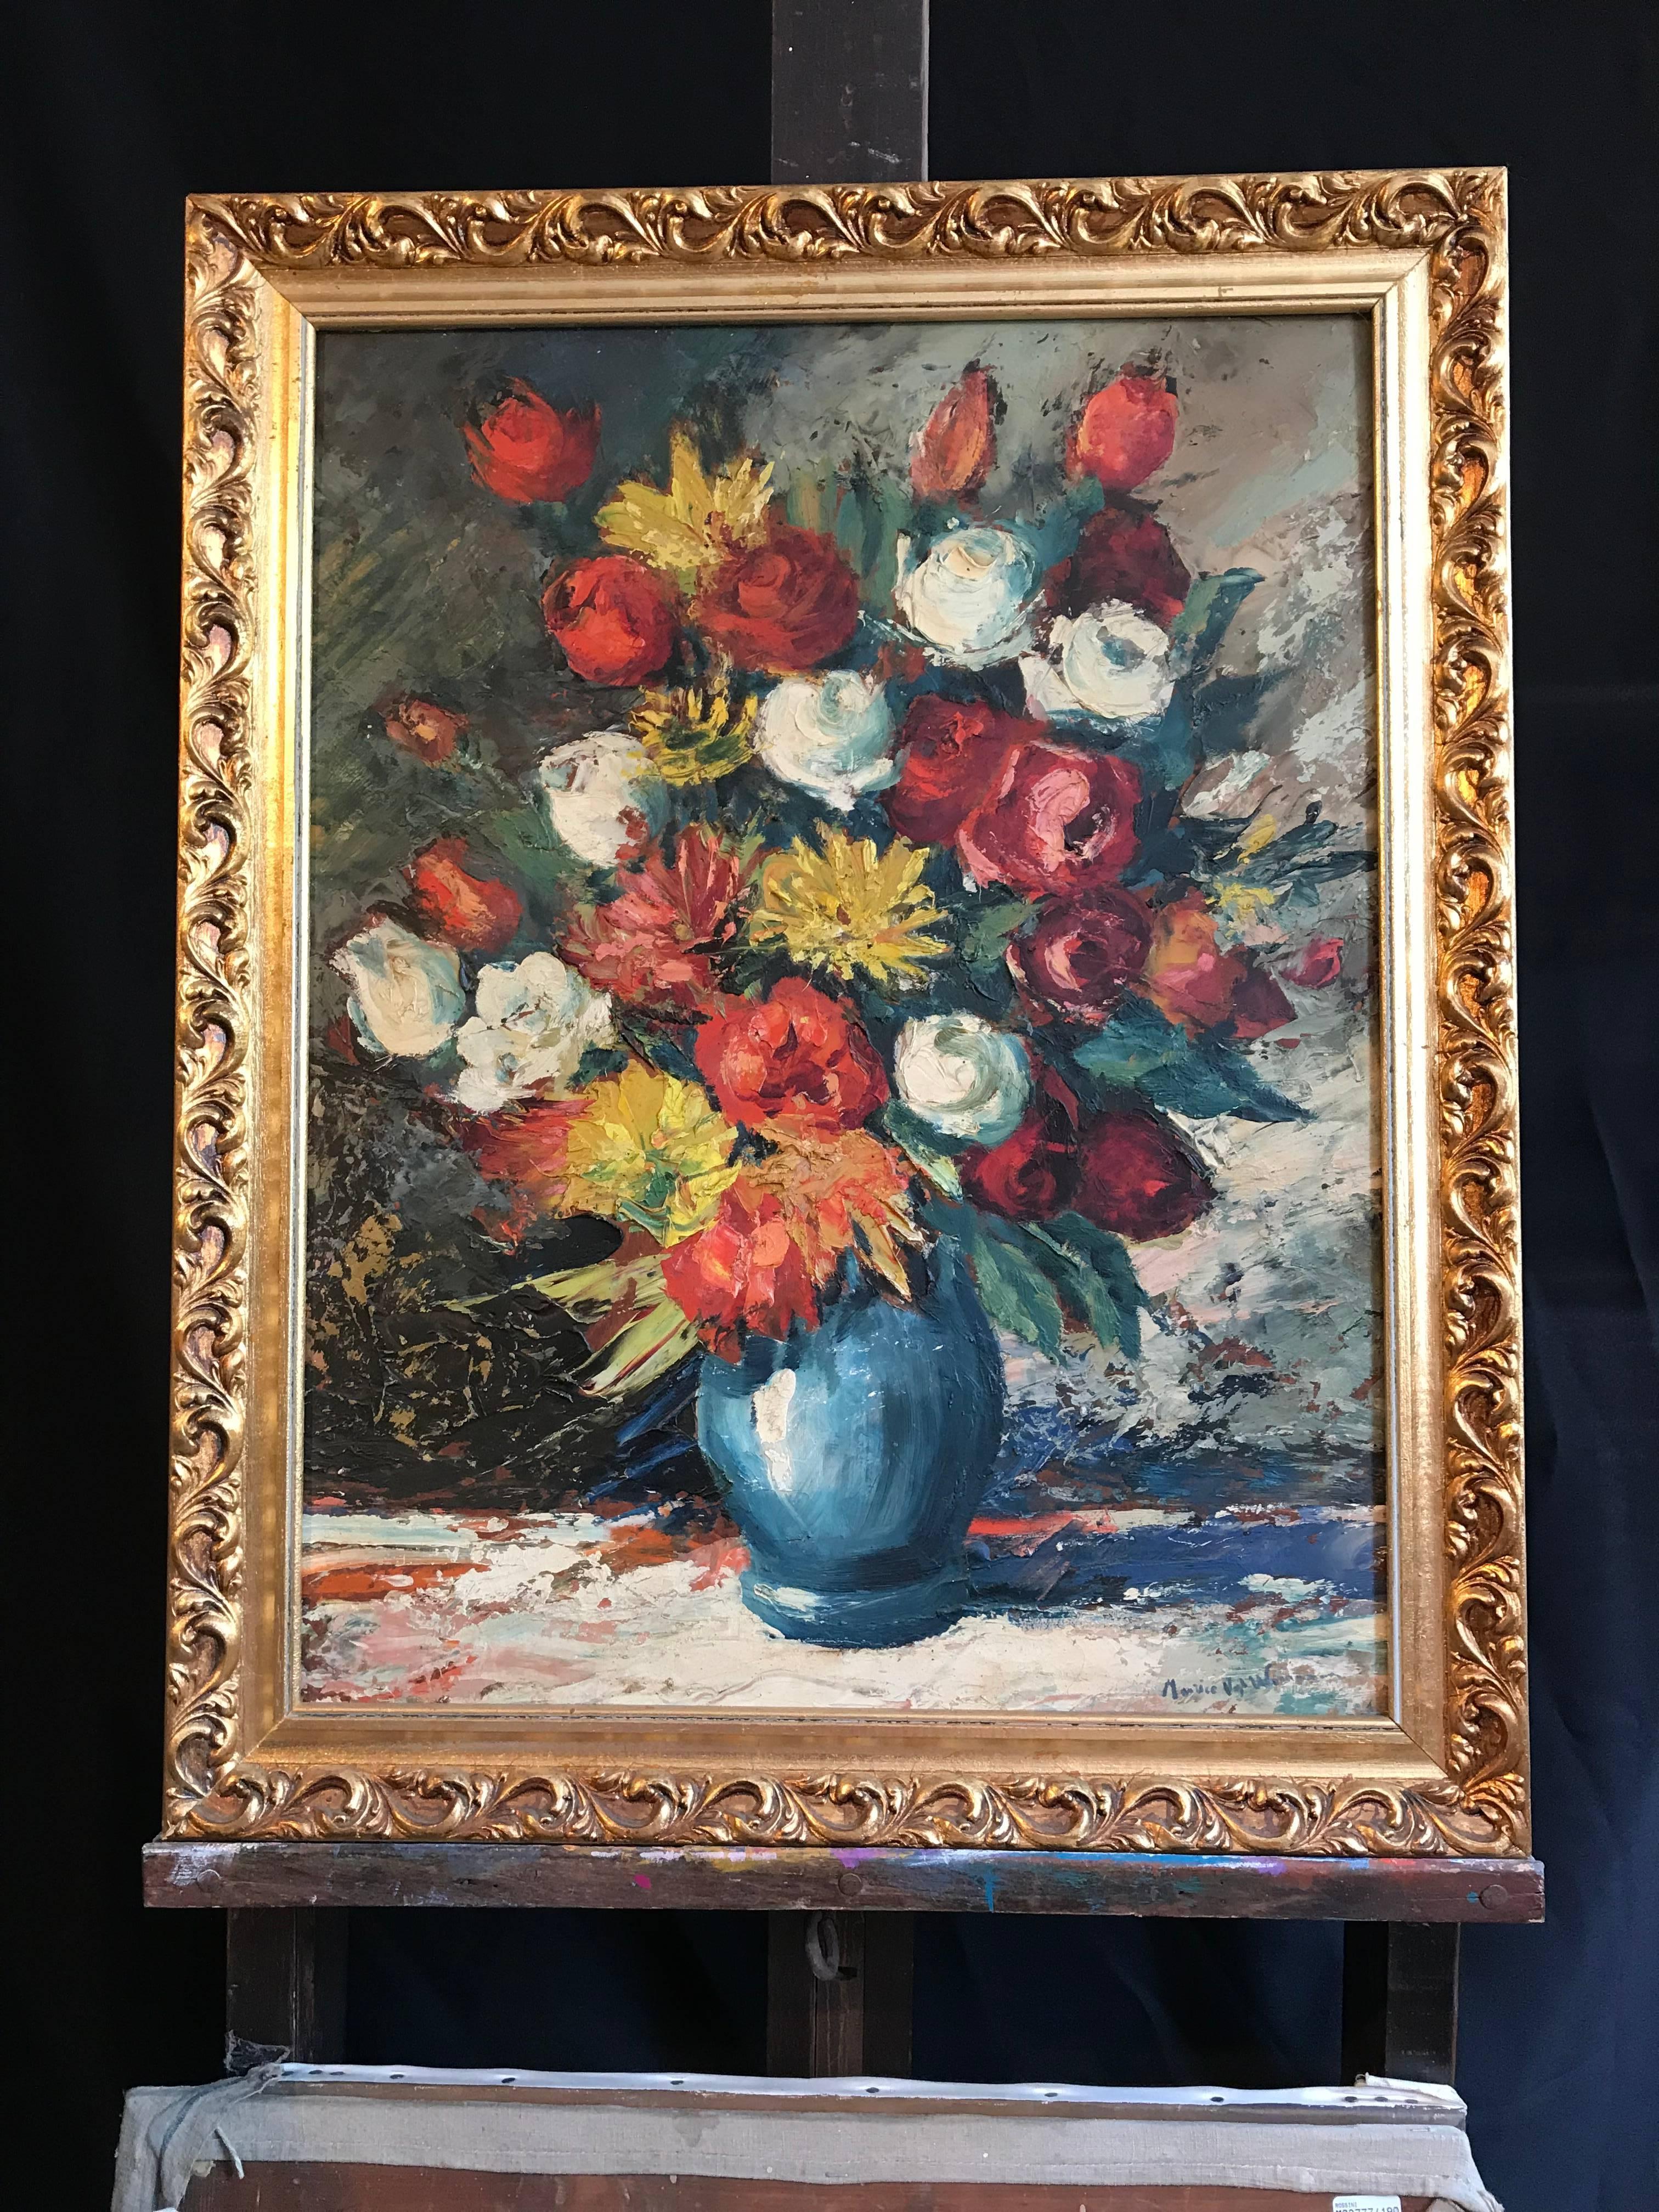 Großes Blumenstrauß-Stillleben mit Blumen im impressionistischen Ölstil  – Painting von Maurice Vagh-Weinmann